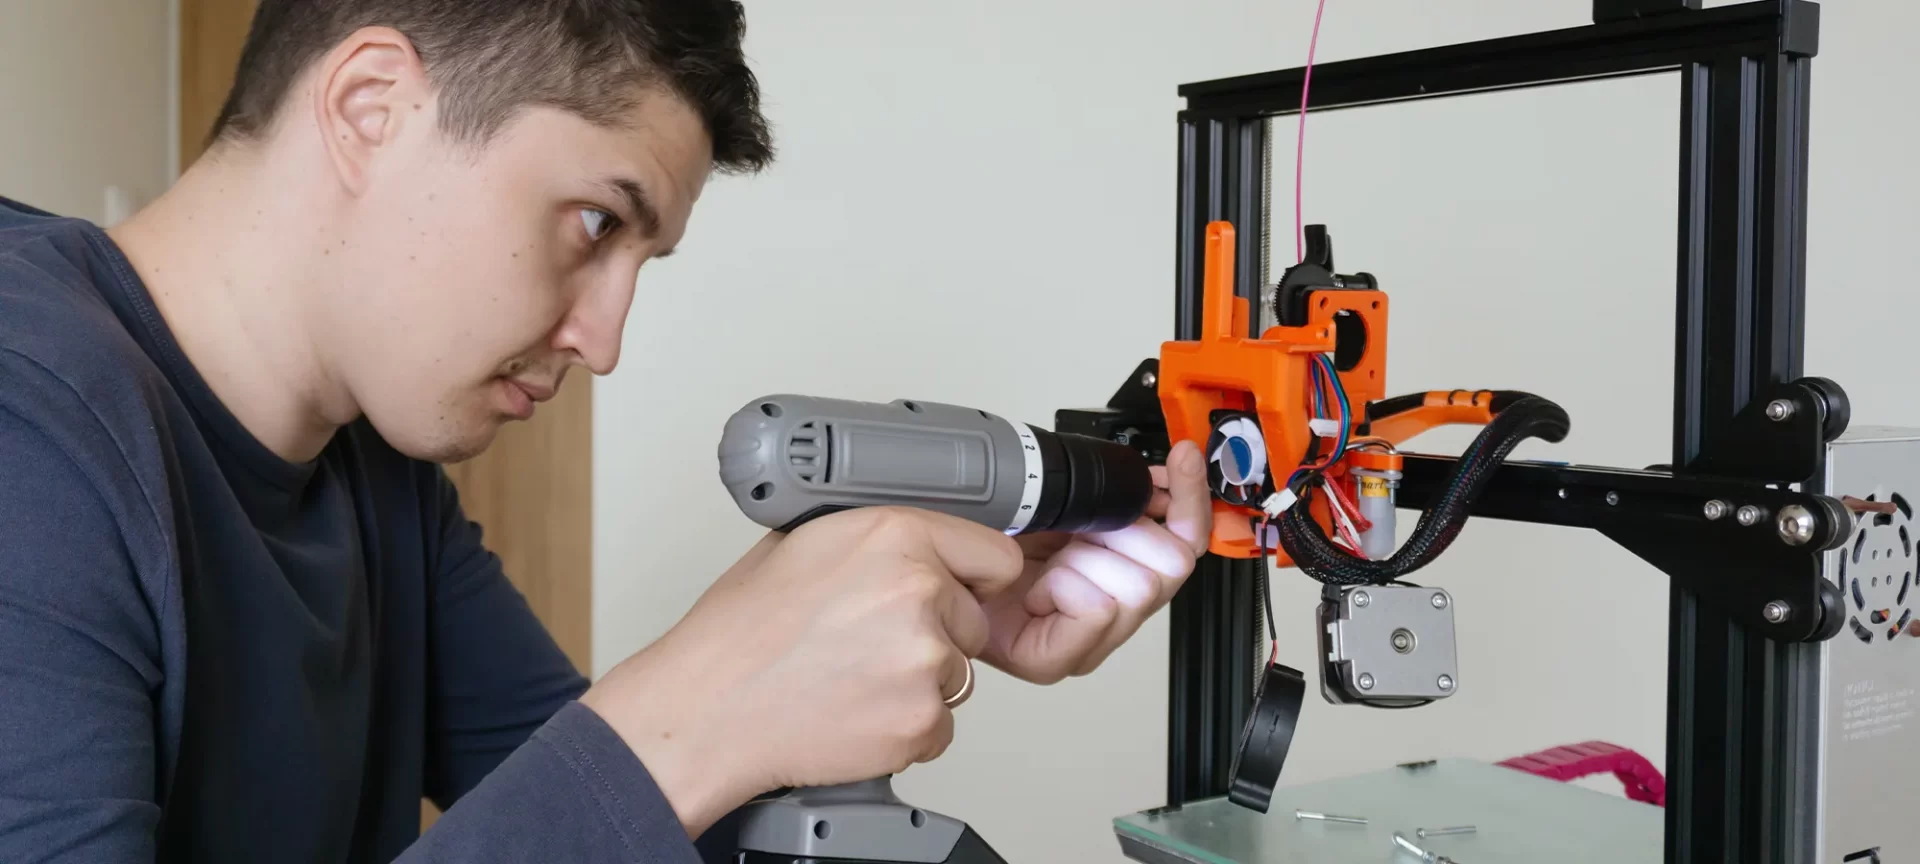 3D printer maintenance